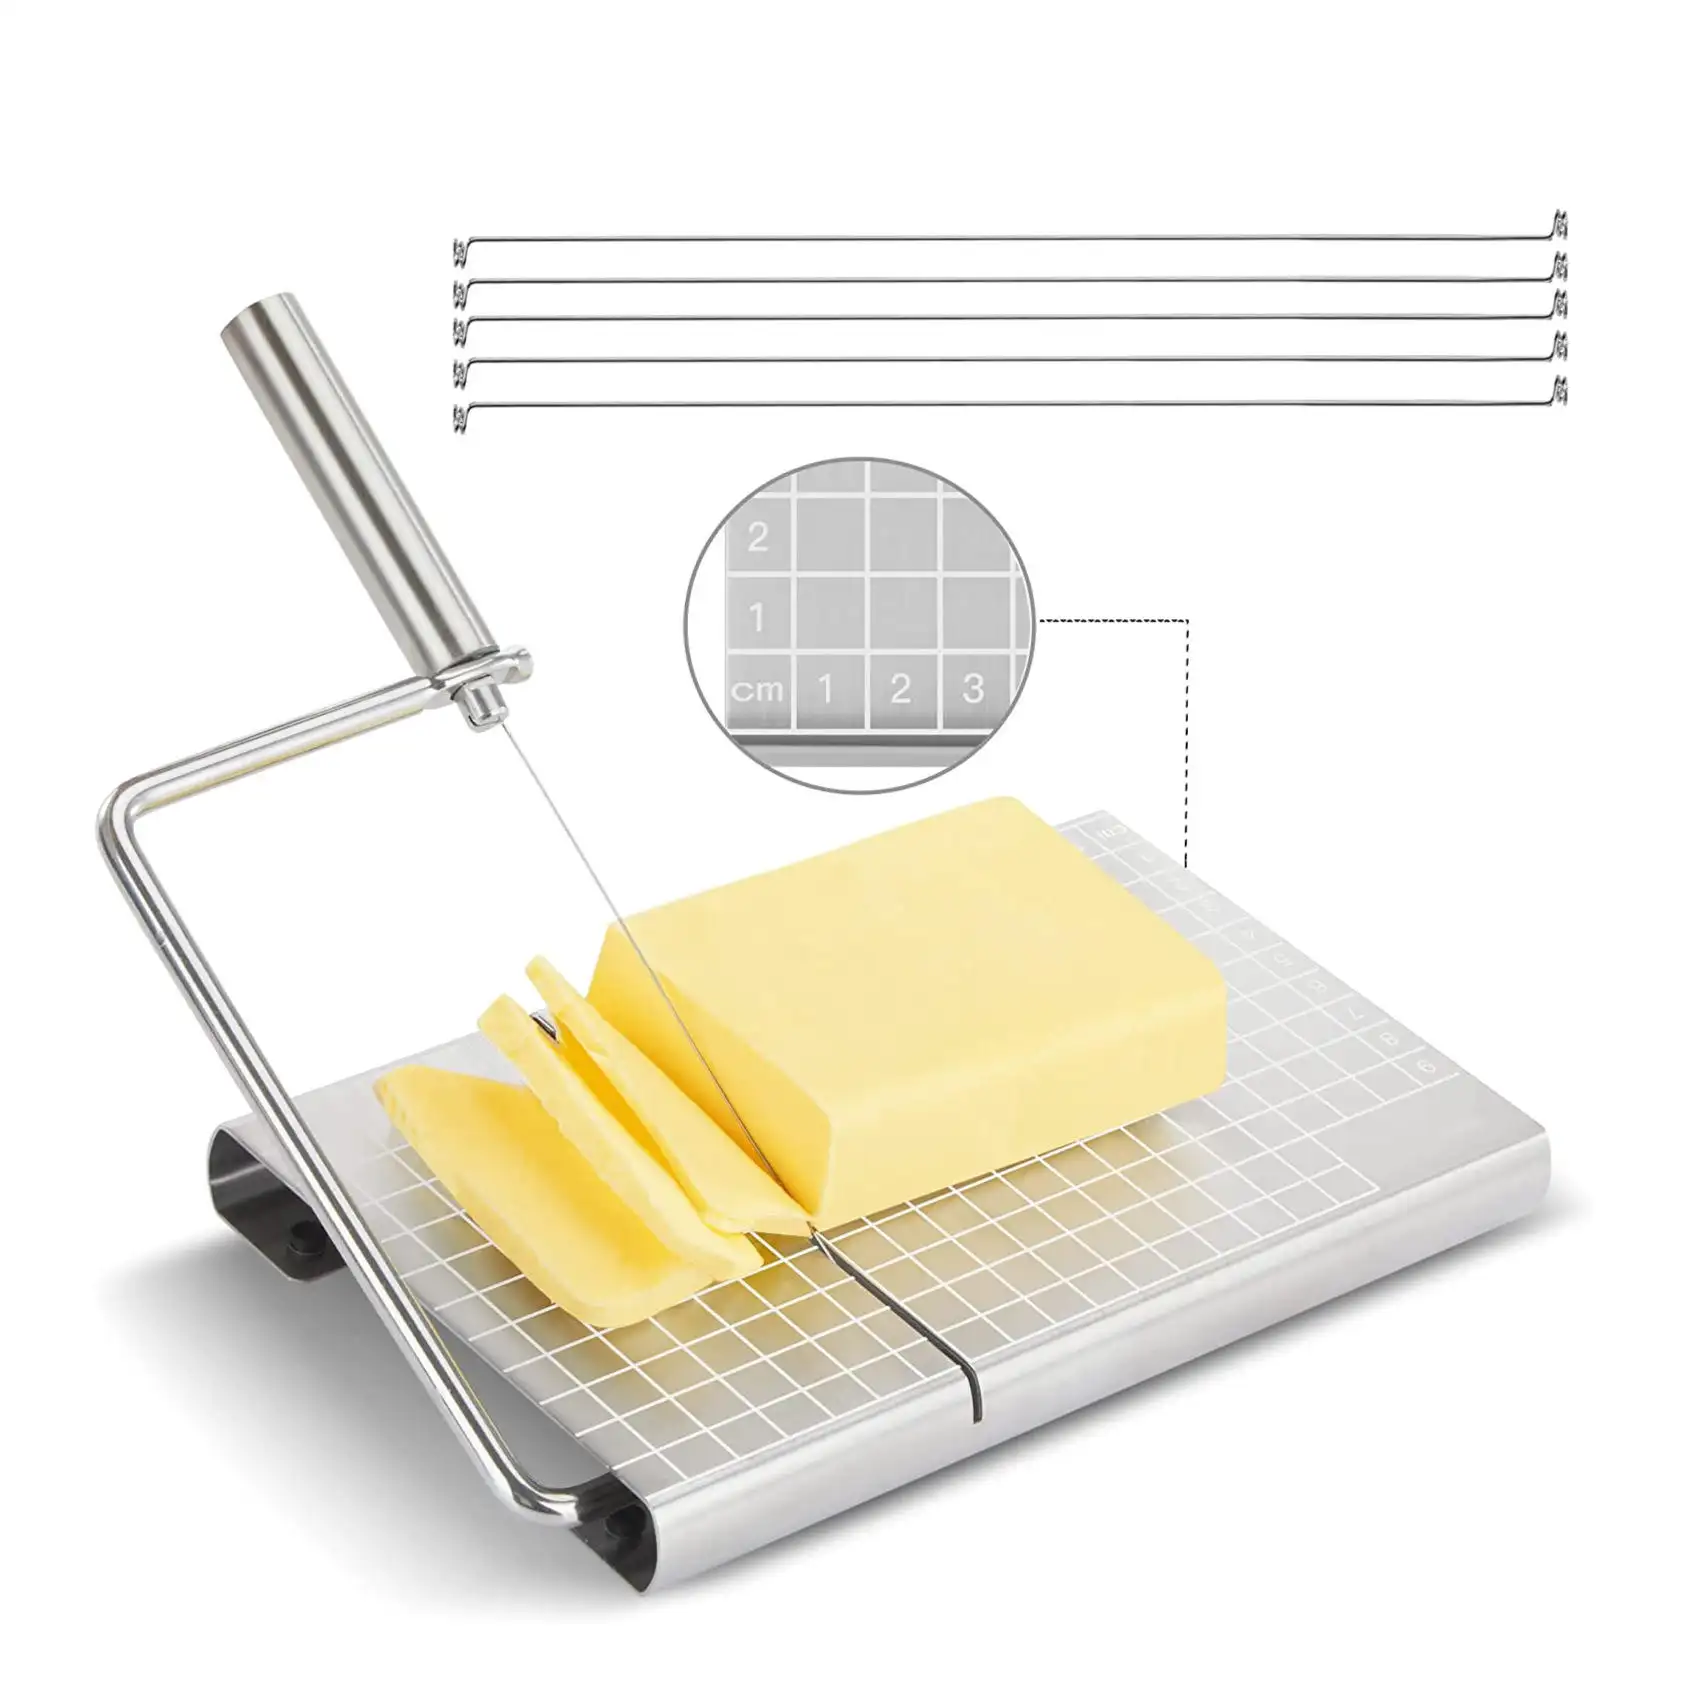 Rebanadora de queso de acero inoxidable de gran oferta con 5 cables de repuesto, herramientas de cocina duraderas, tabla cortadora de queso con escala precisa